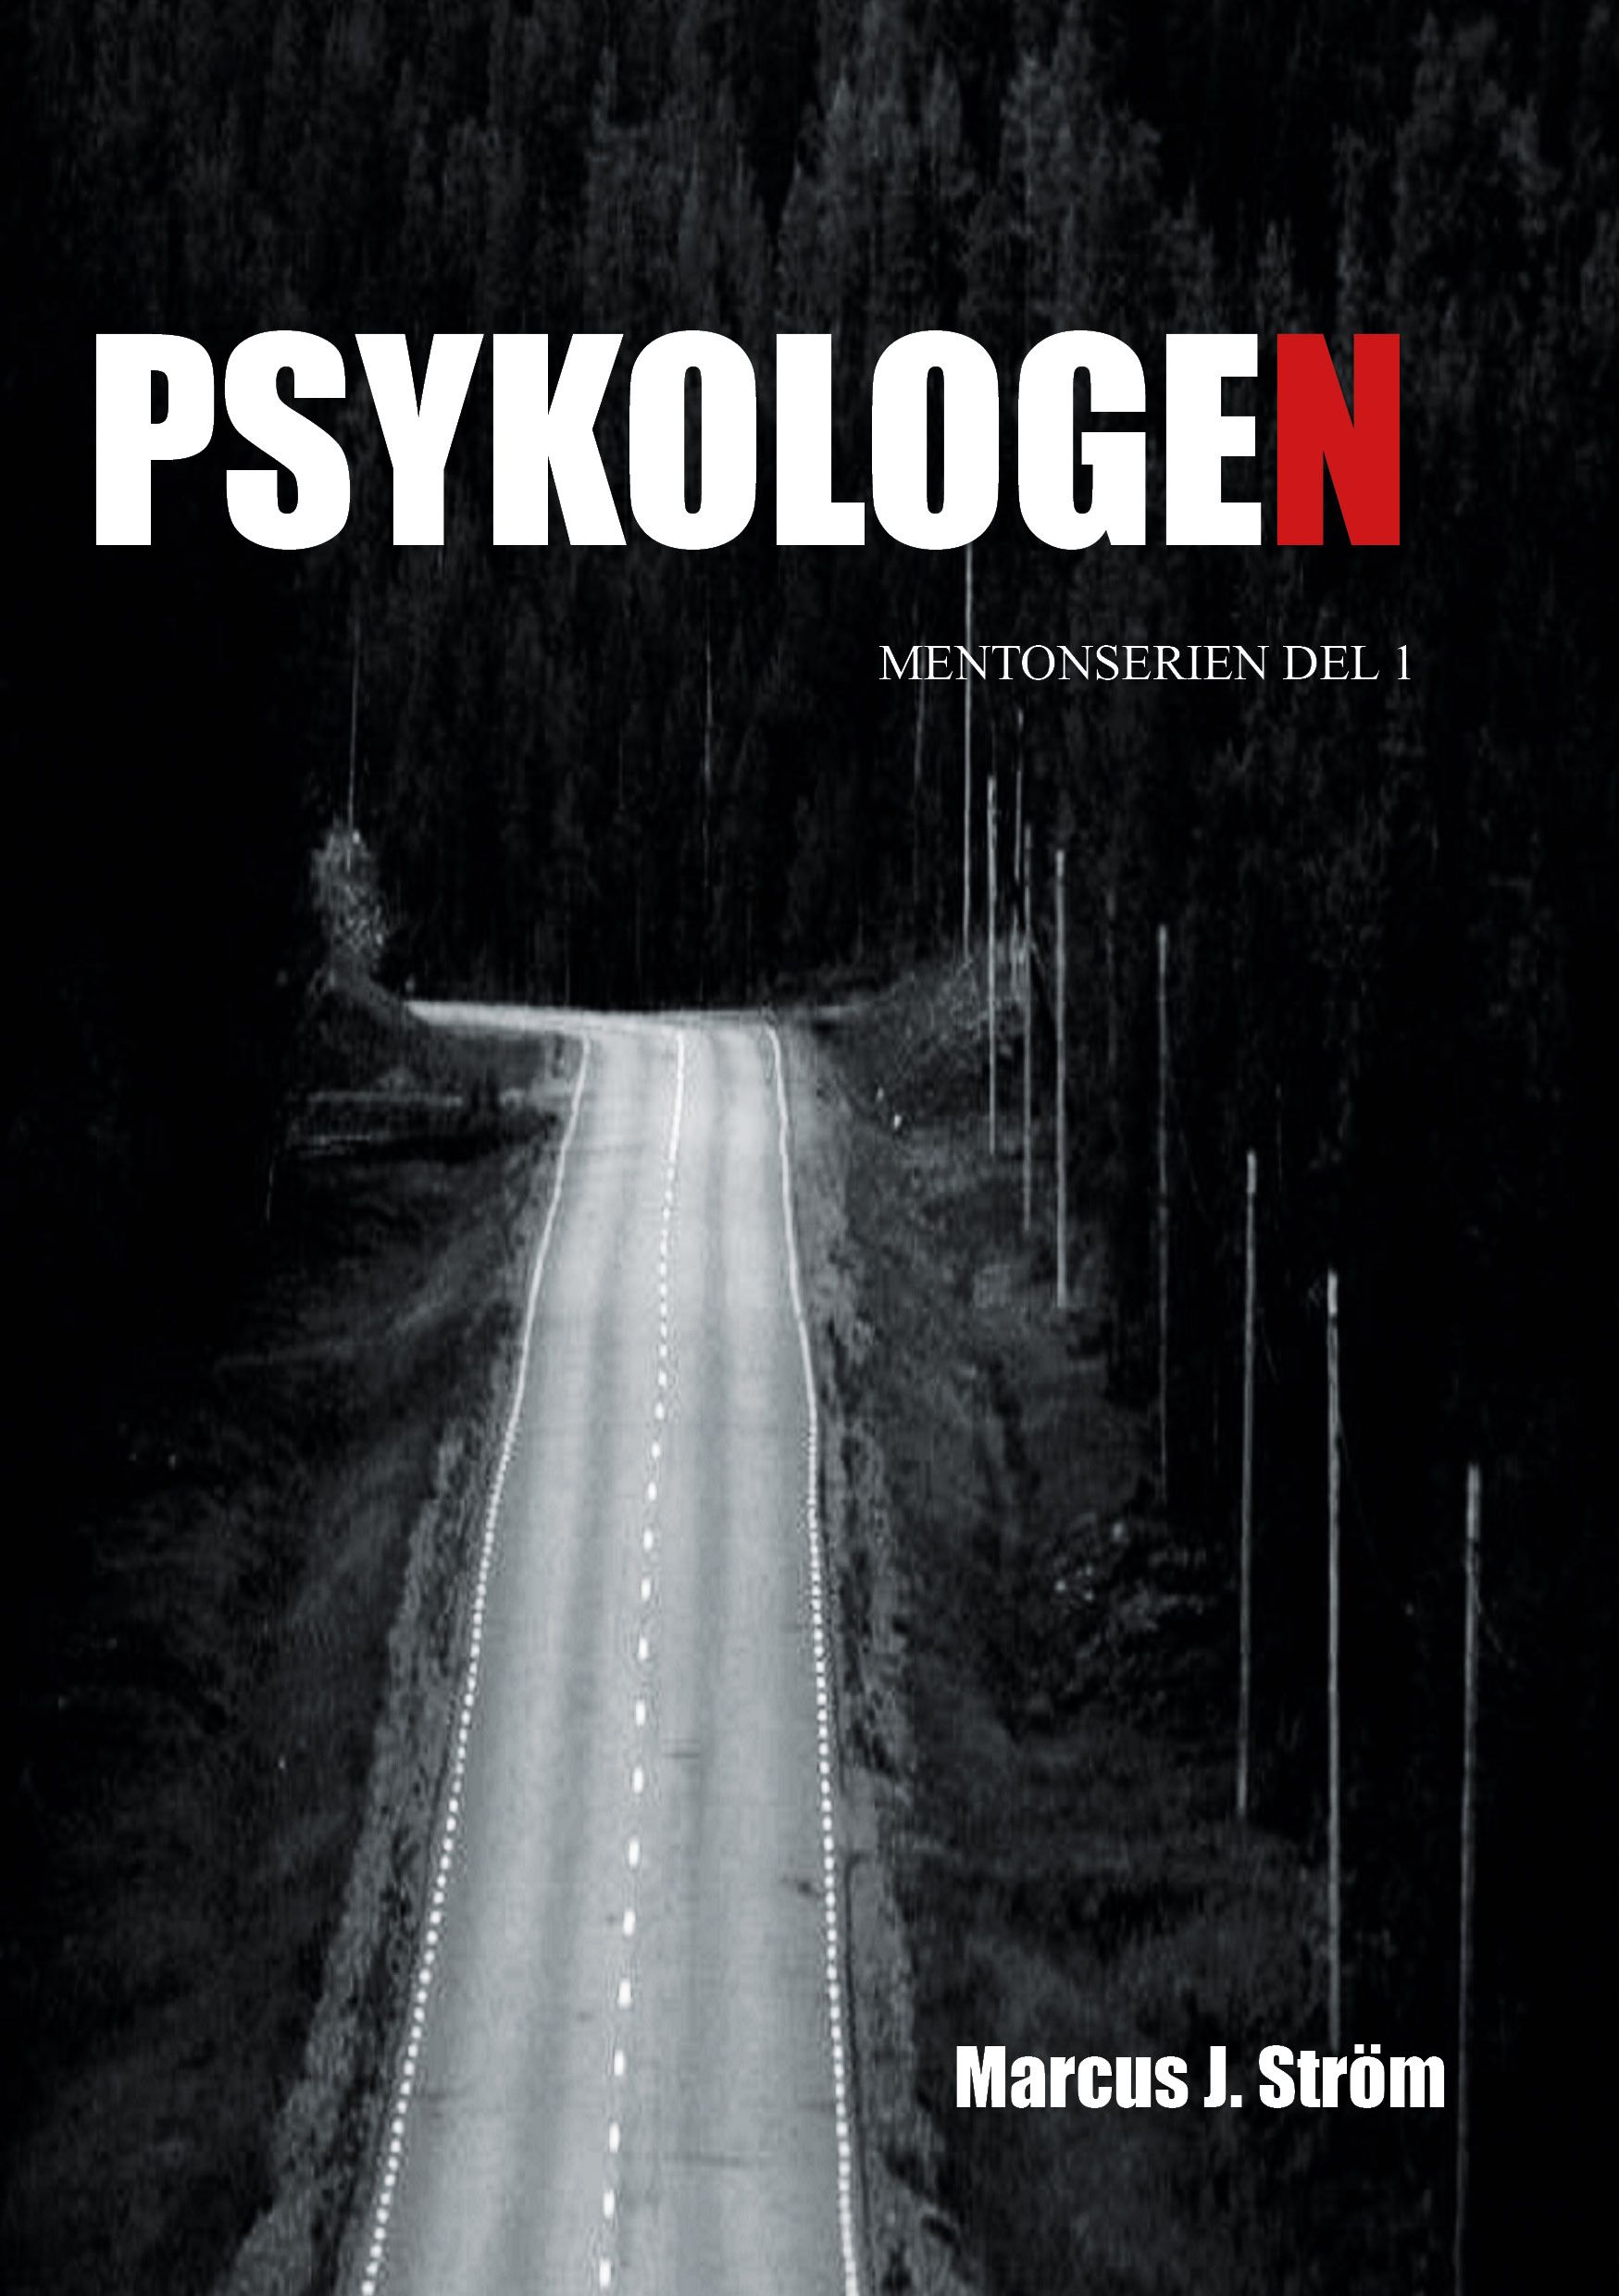 Psykologen, e-bog af Marcus J. Ström